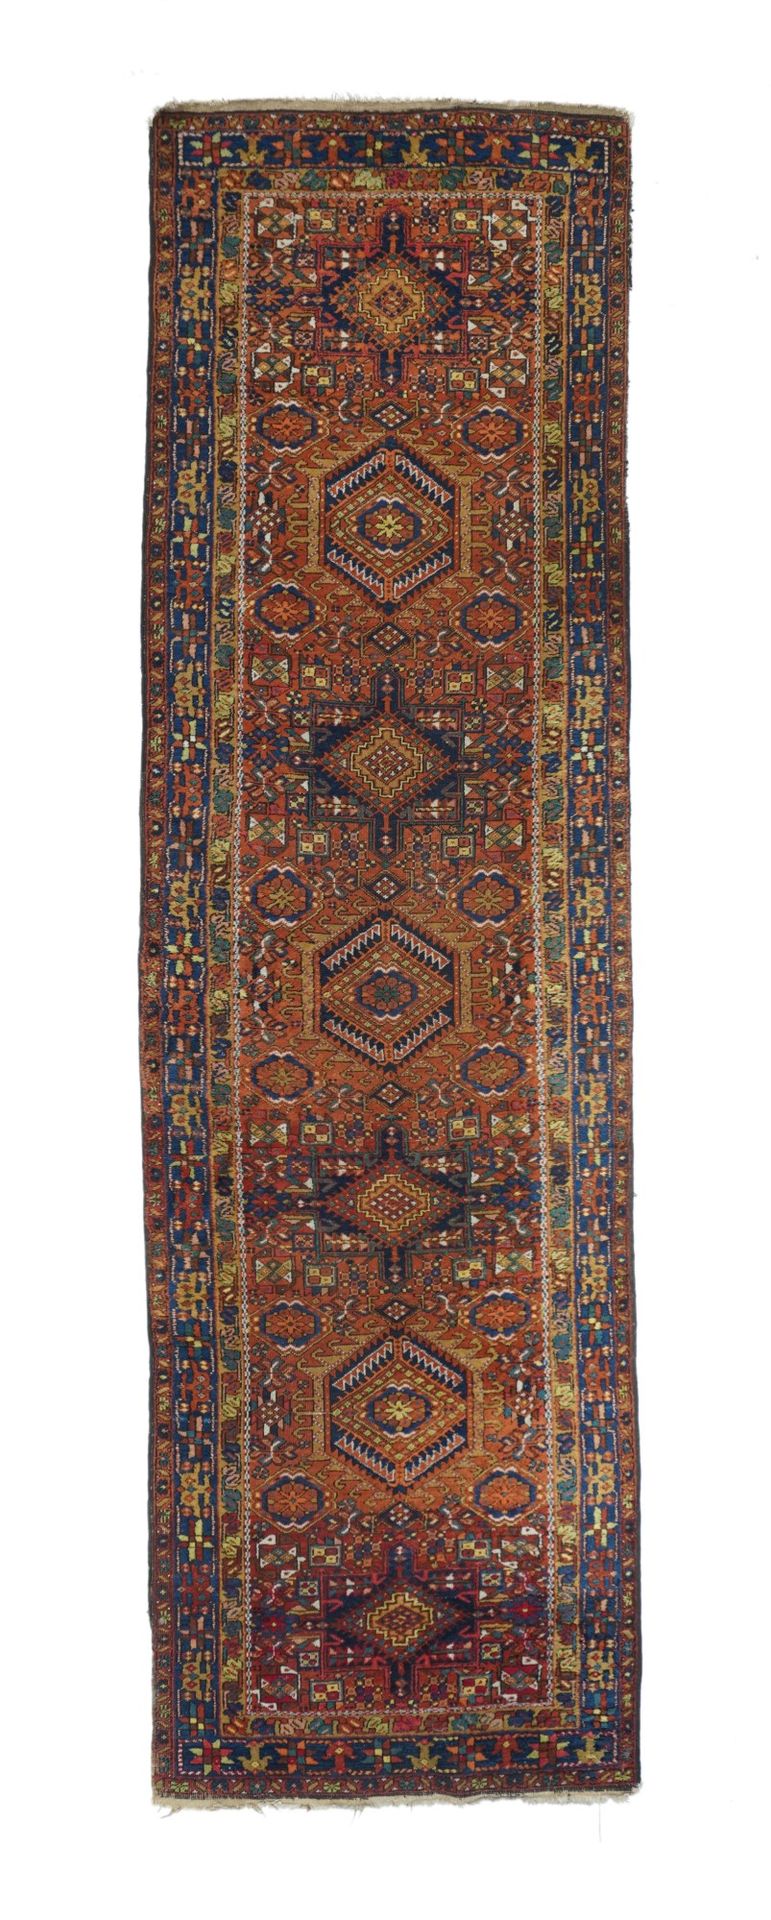 Null Vintage Karajeh Long Rug, 3'4" x 11'4" ( 1.02 x 3.45 M )